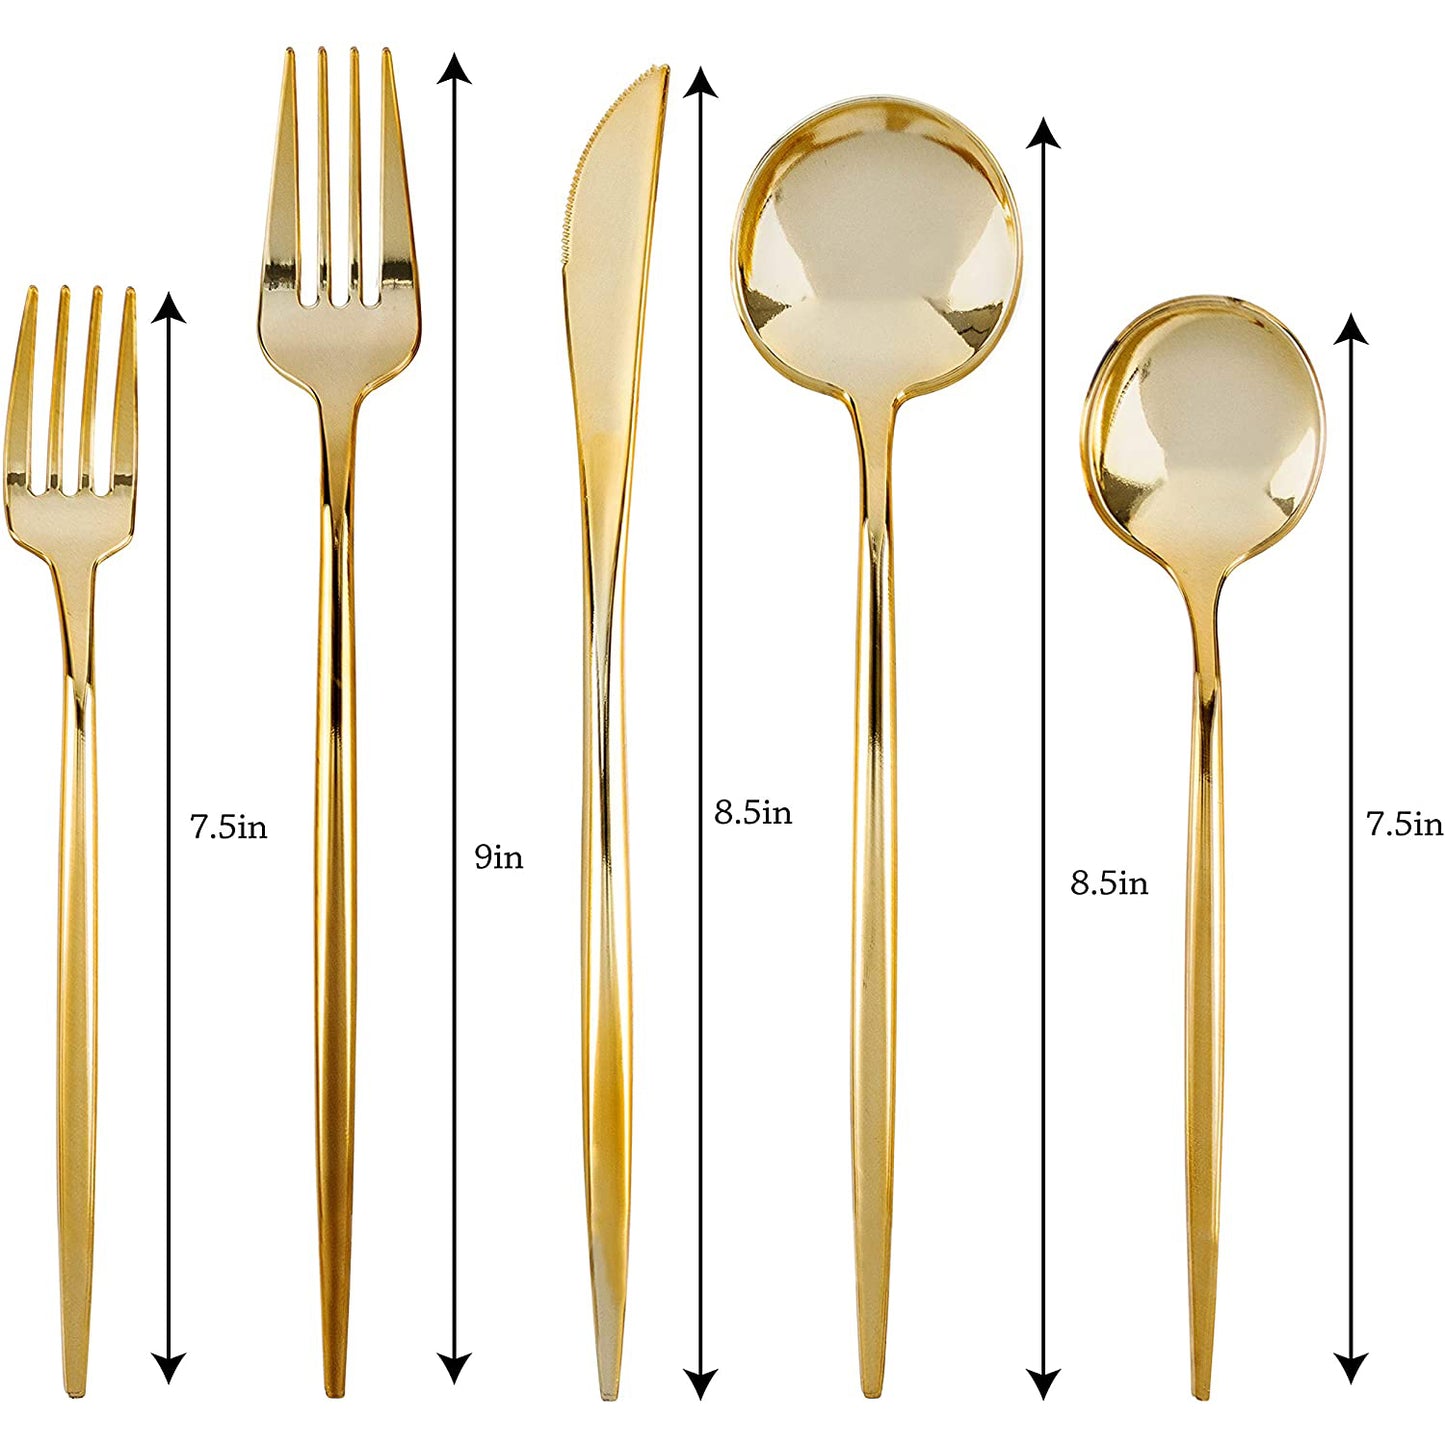 Antique Gold Floral Dinner Plates. Elegant Wedding Dinner Plates, Salad Plates, Forks, Spoons, Knives,Cups Plates Blue Sky   